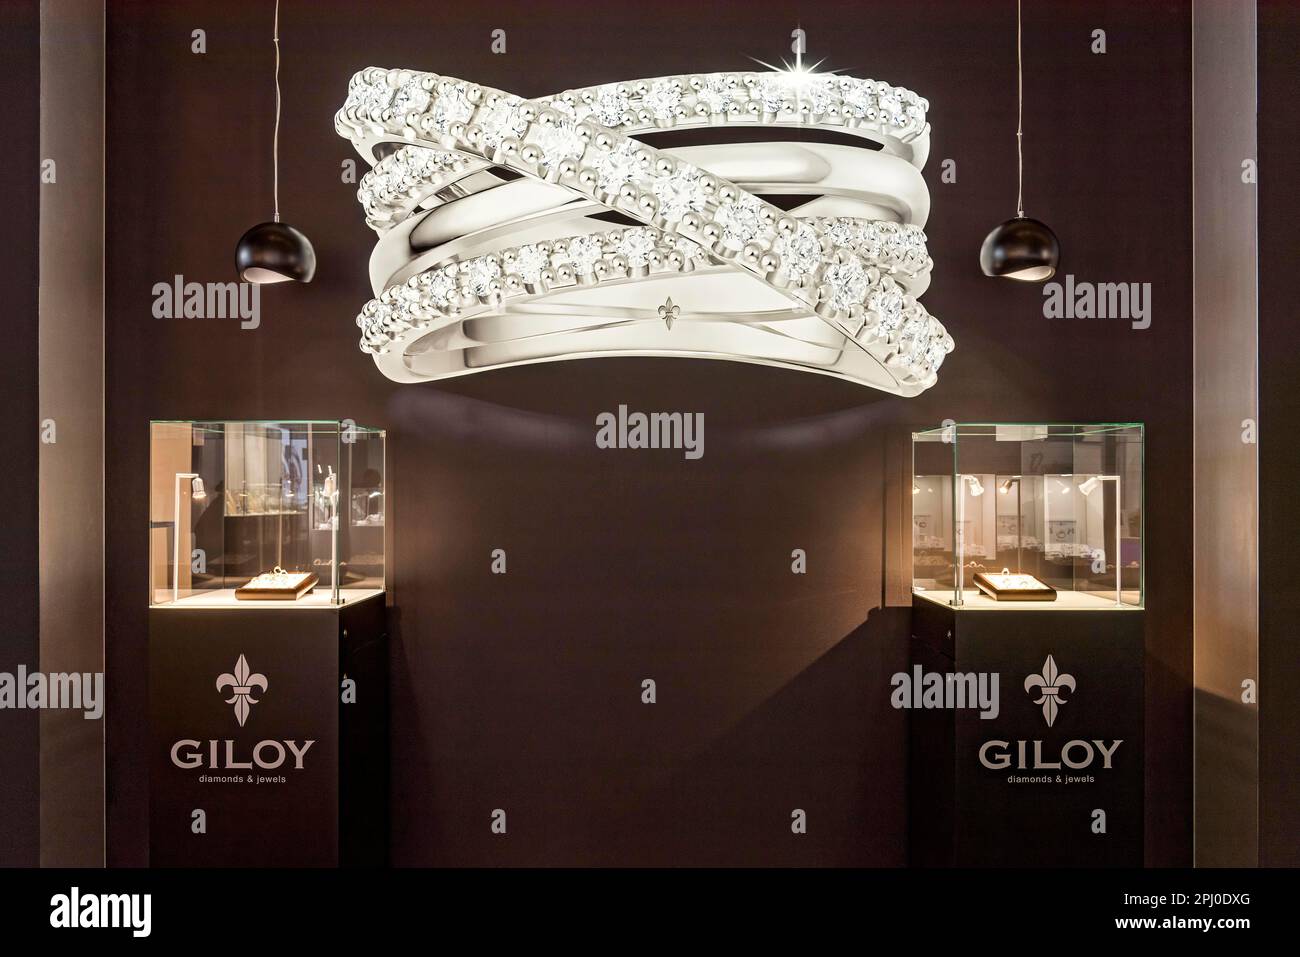 An der Fotowand werden hochwertige Schmuckstücke gezeigt, der Ausstellungsstand Juwelier Giloy Diamanten & Juwelen, INHORGENTA, Messe für Schmuckuhren Stockfoto